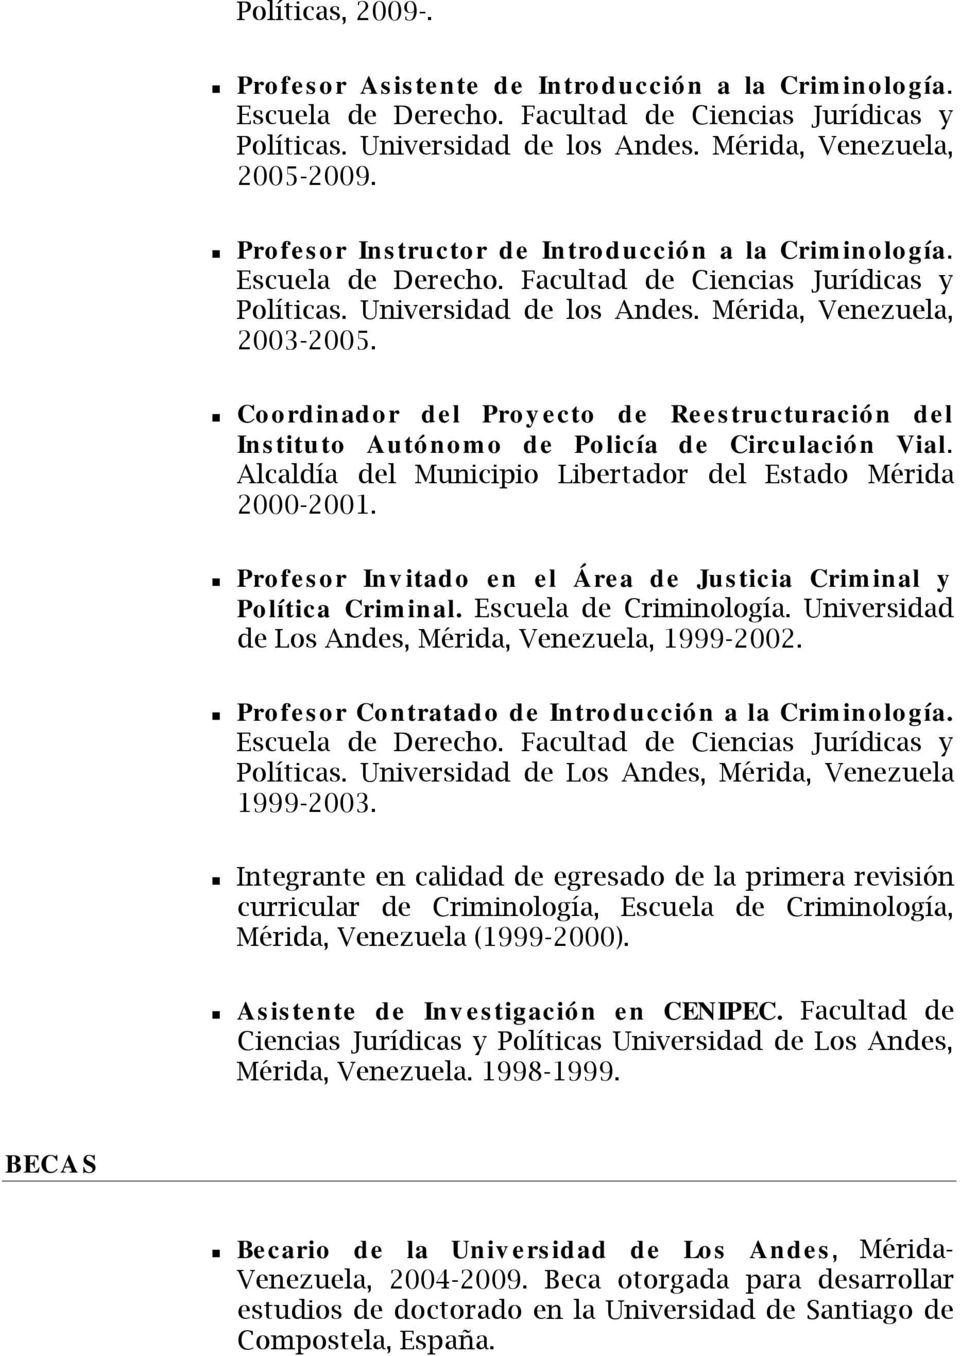 Coordinador del Proyecto de Reestructuración del Instituto Autónomo de Policía de Circulación Vial. Alcaldía del Municipio Libertador del Estado Mérida 2000-2001.